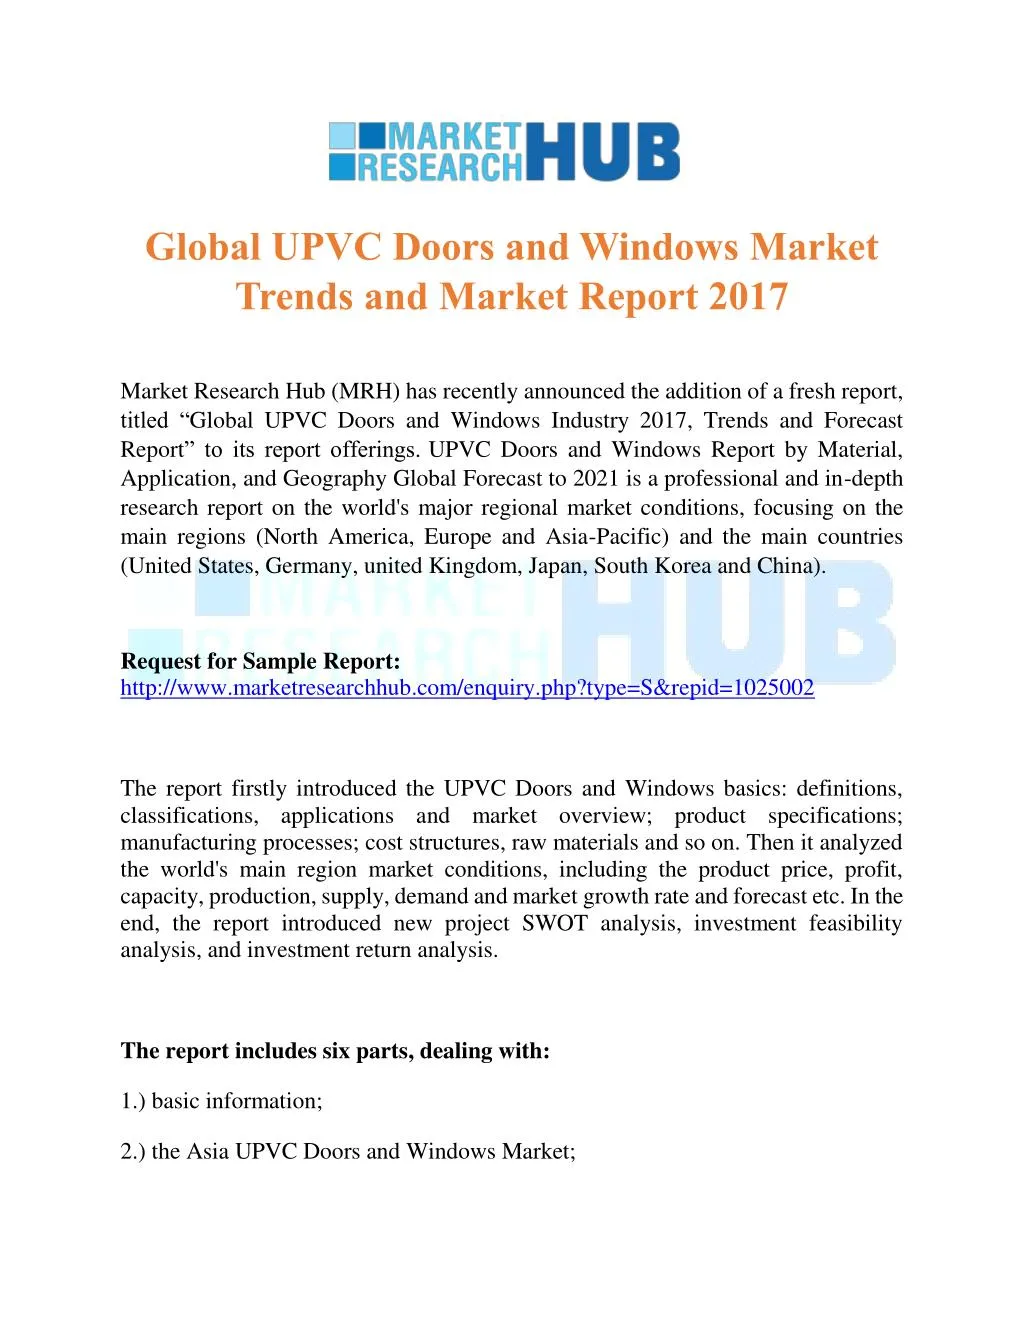 global upvc doors and windows market trends